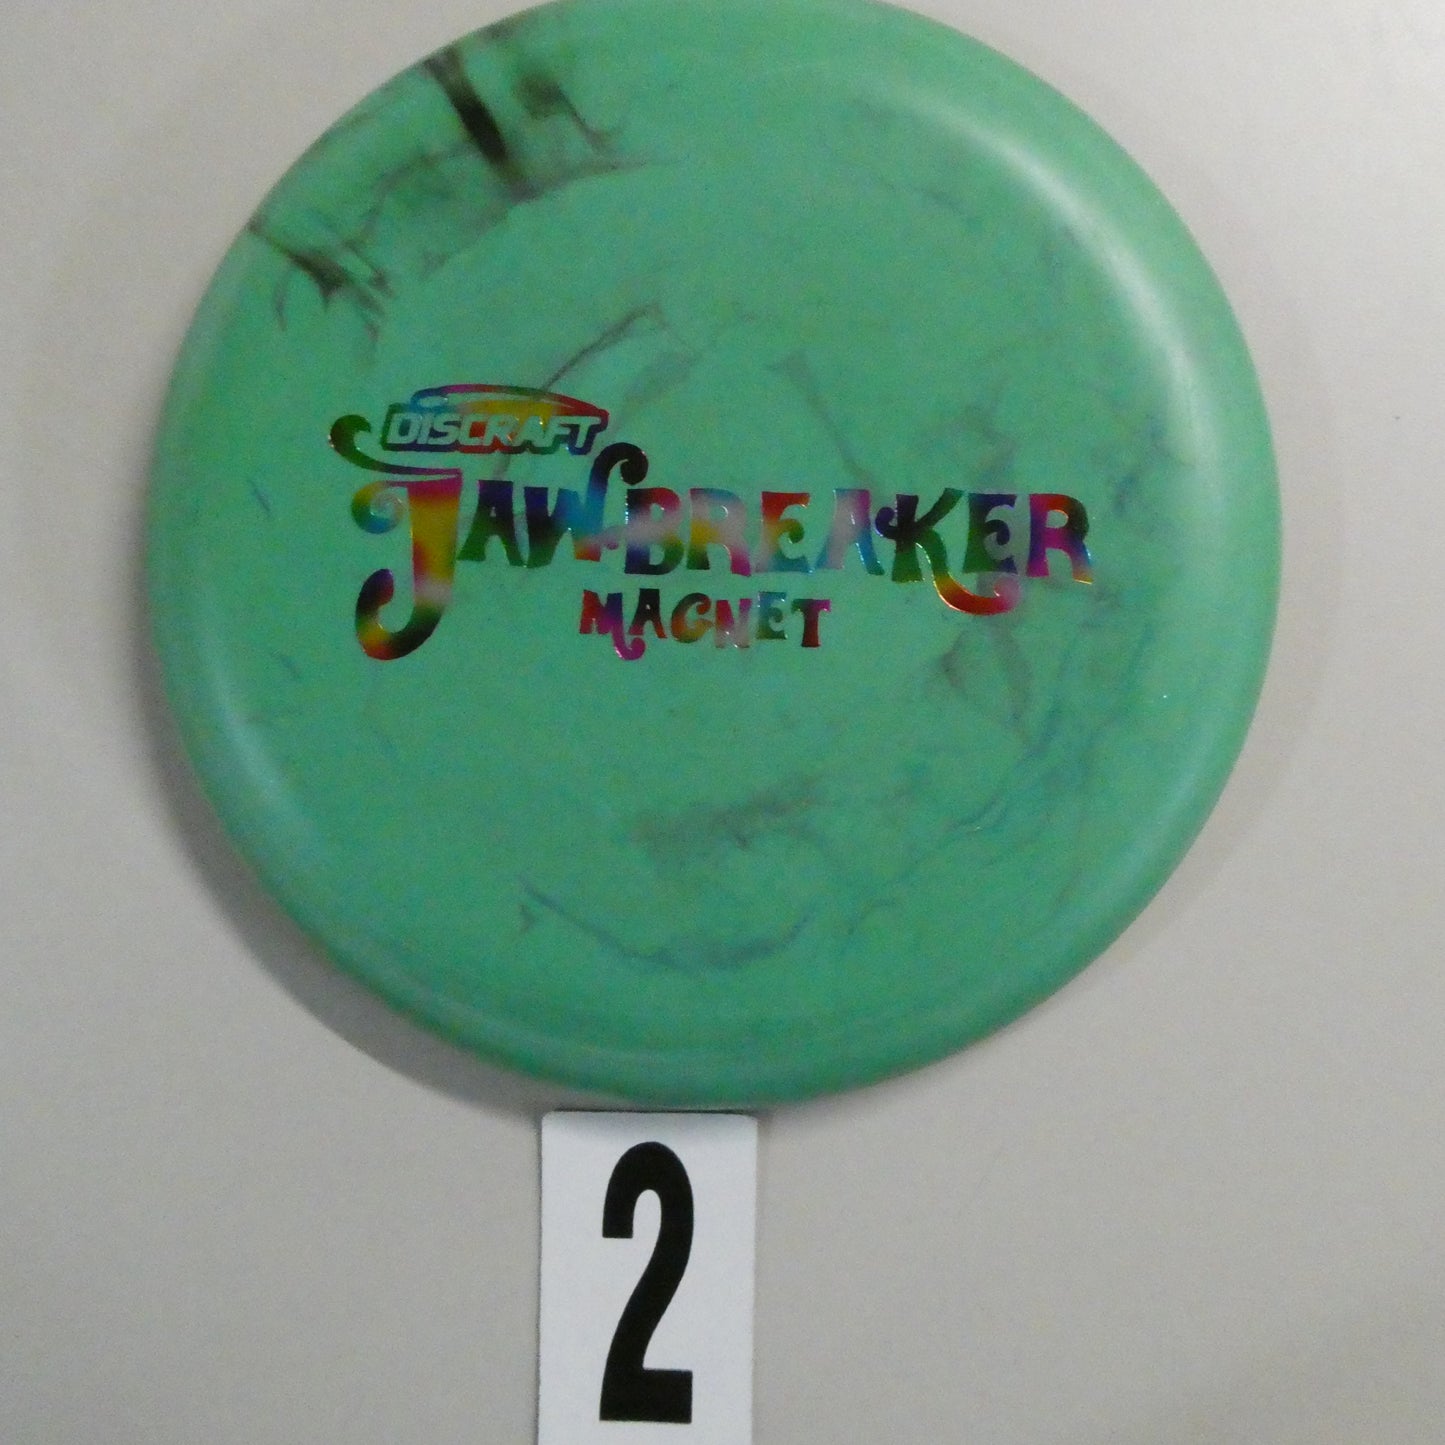 Jawbreaker Magnet